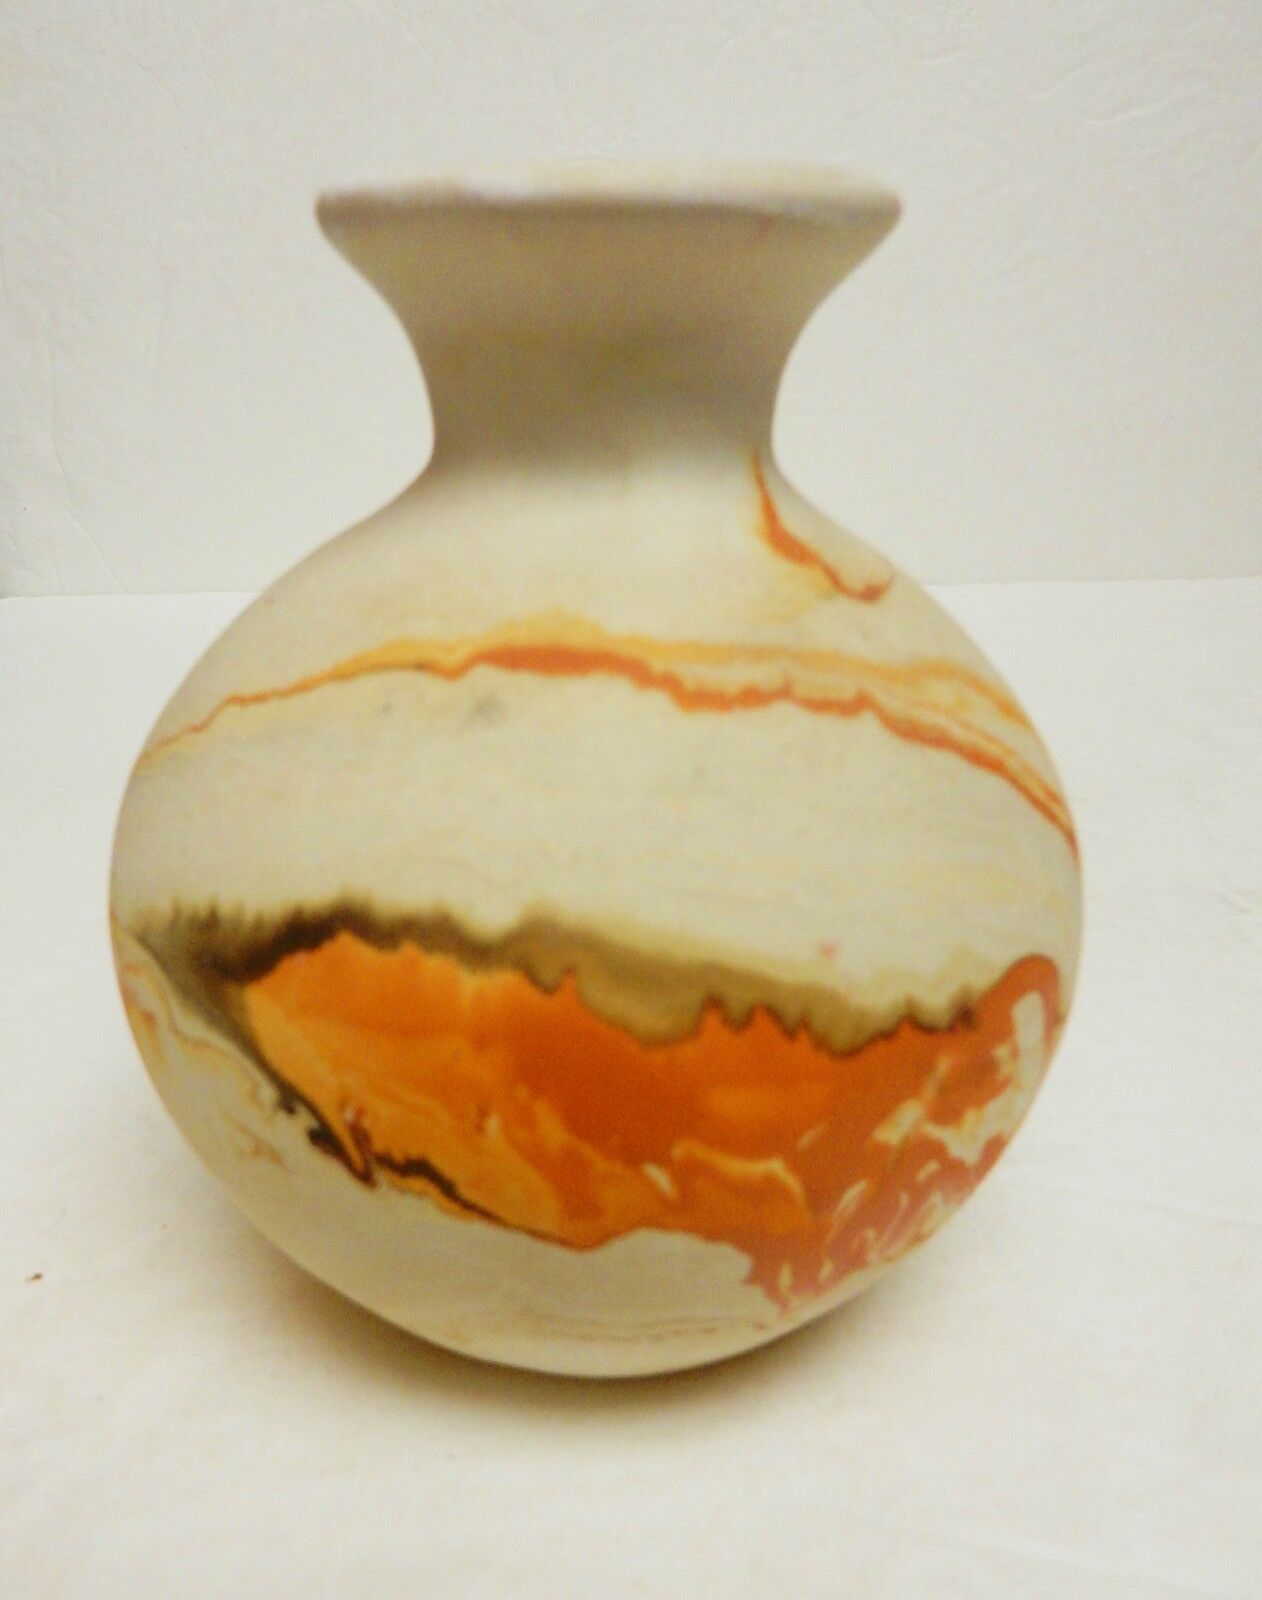 Nemadji Indian Pottery Jar Vase Bowl Swirl Beige Orange Arts Crafts 4.5" Vintage